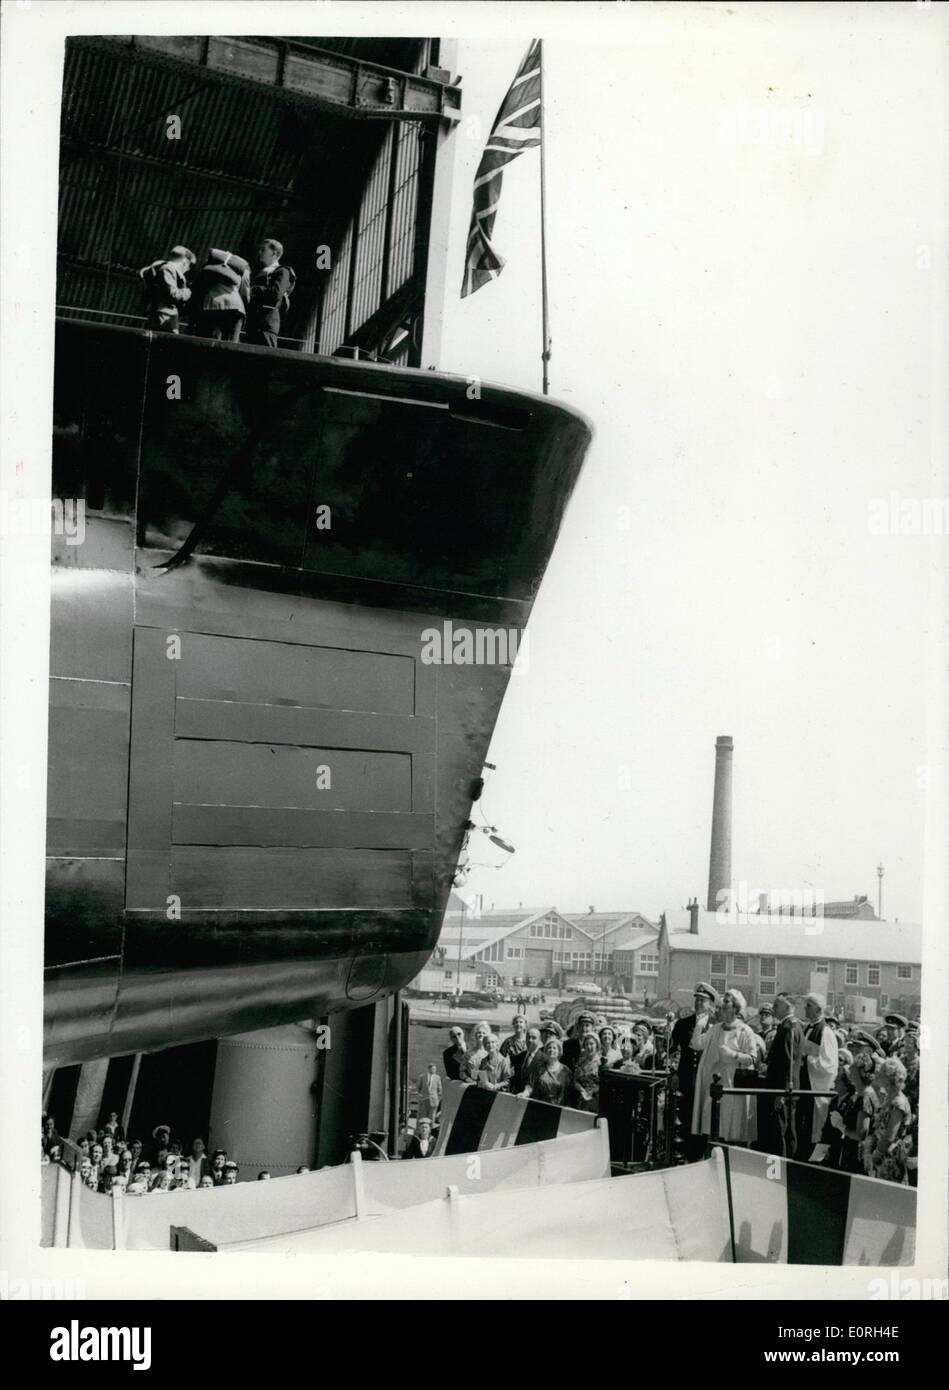 Lug. 07, 1959 - Duchessa di Kent lancia un nuovo sommergibile. S.a.r. la duchessa di Kant ha lanciato oggi il sommergibile H.M.S. OBERON a Foto Stock